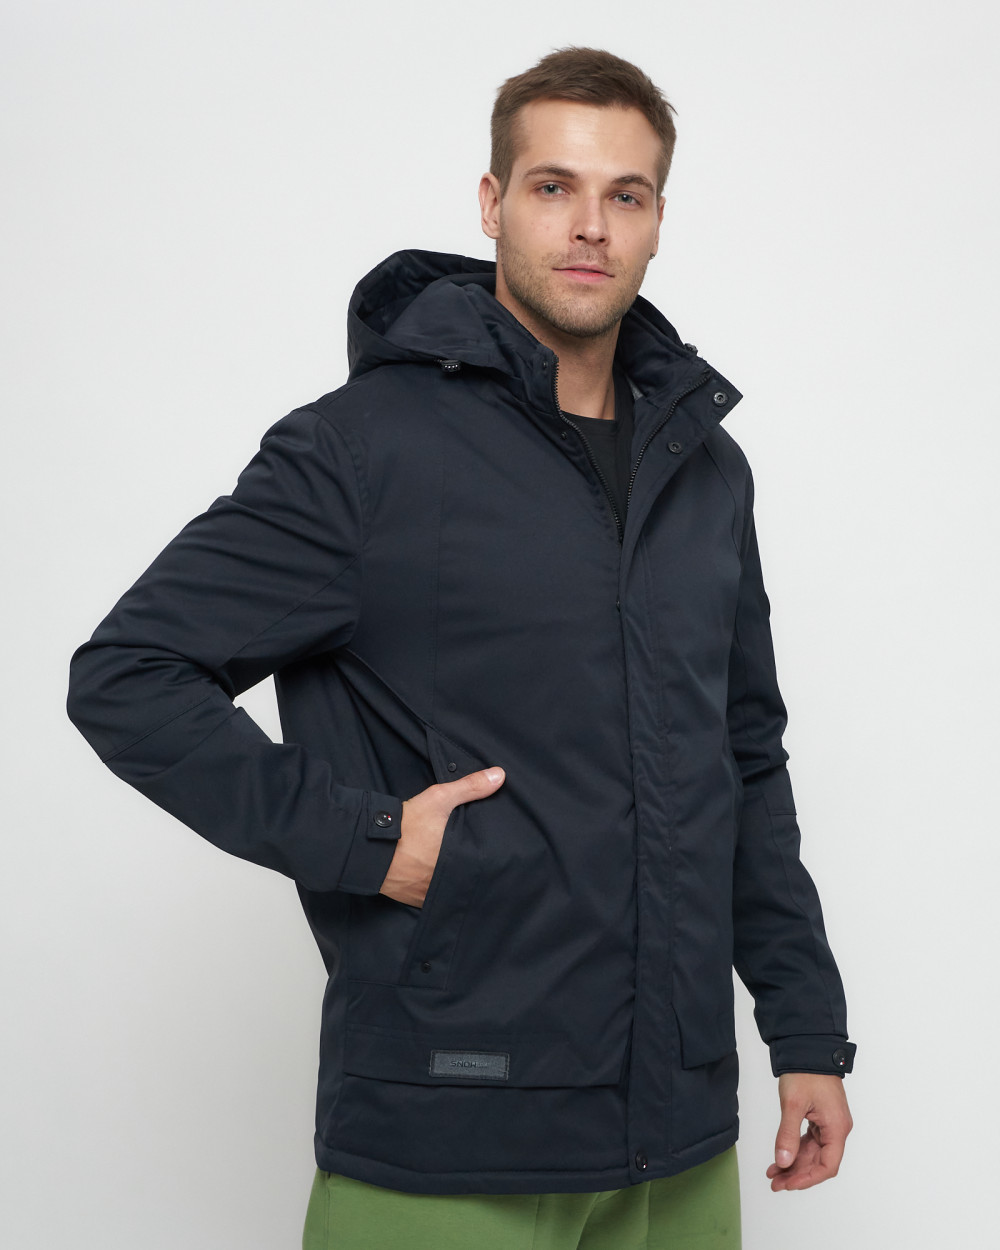 Купить куртку мужскую спортивную весеннюю оптом от производителя недорого в Москве 8599TS 1